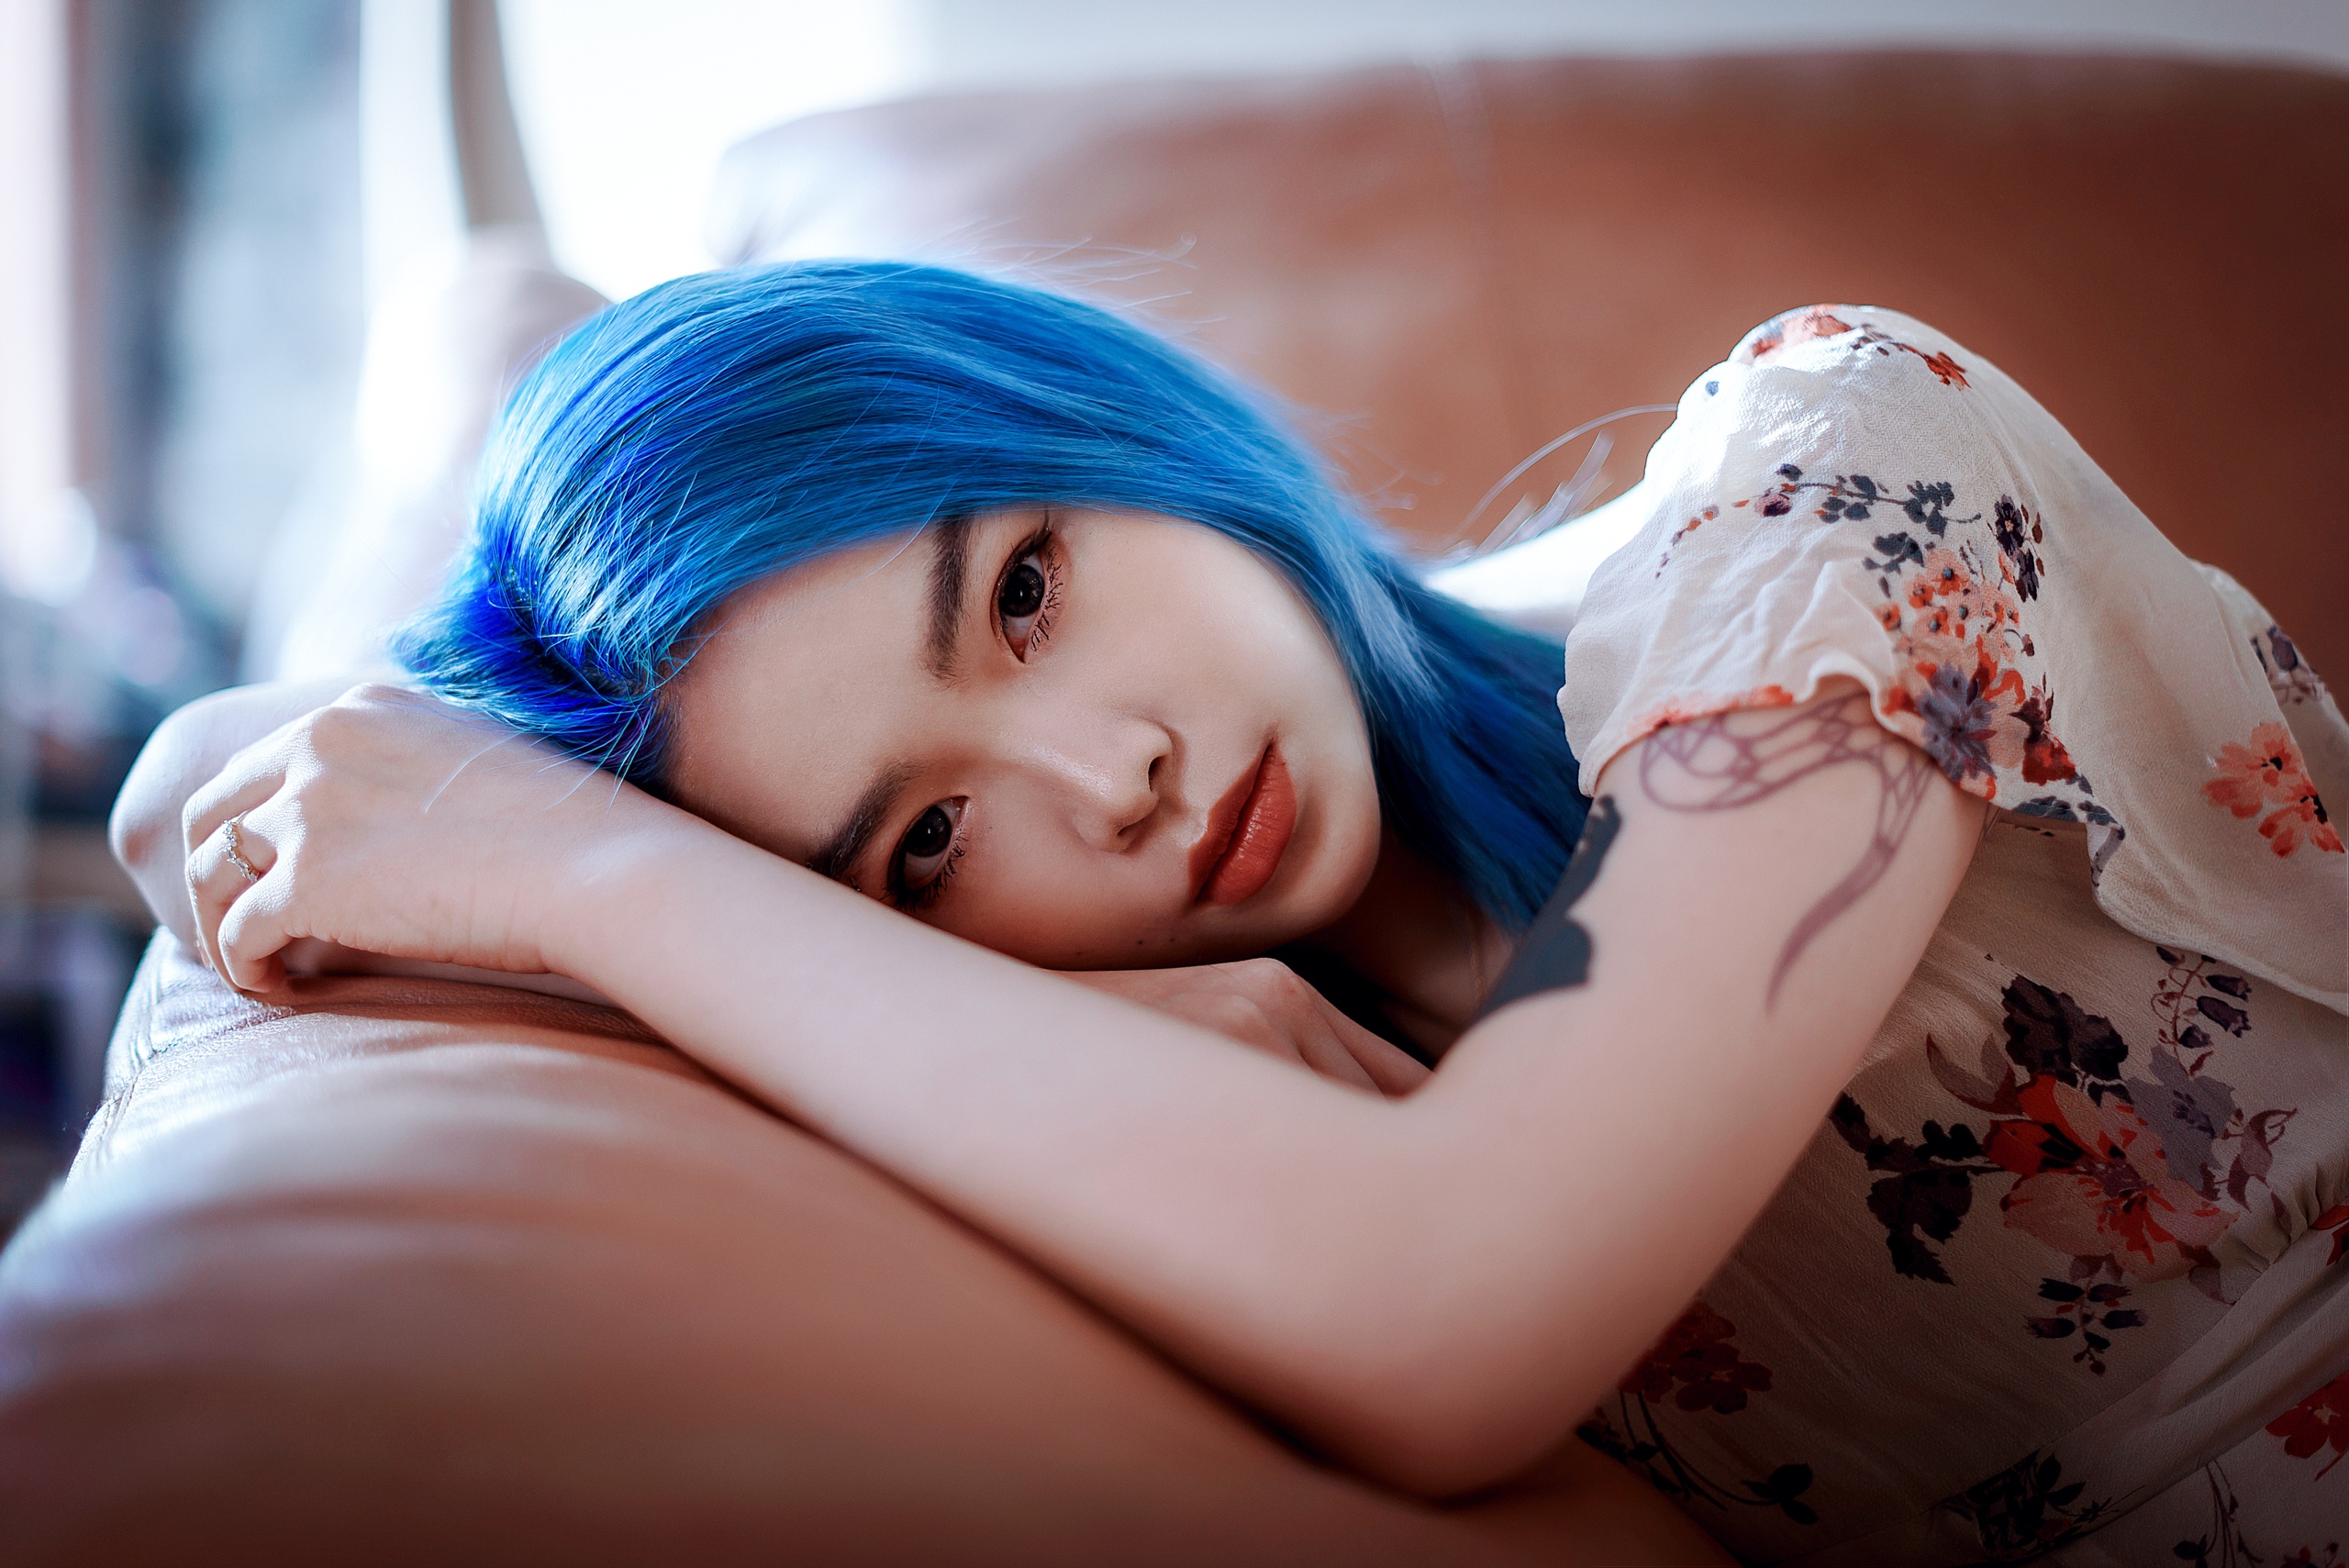 Women Model Asian Blue Hair Dyed Hair Looking At Viewer Pierced Eyebrow Pink Lipstick Dress Couch De 2560x1709